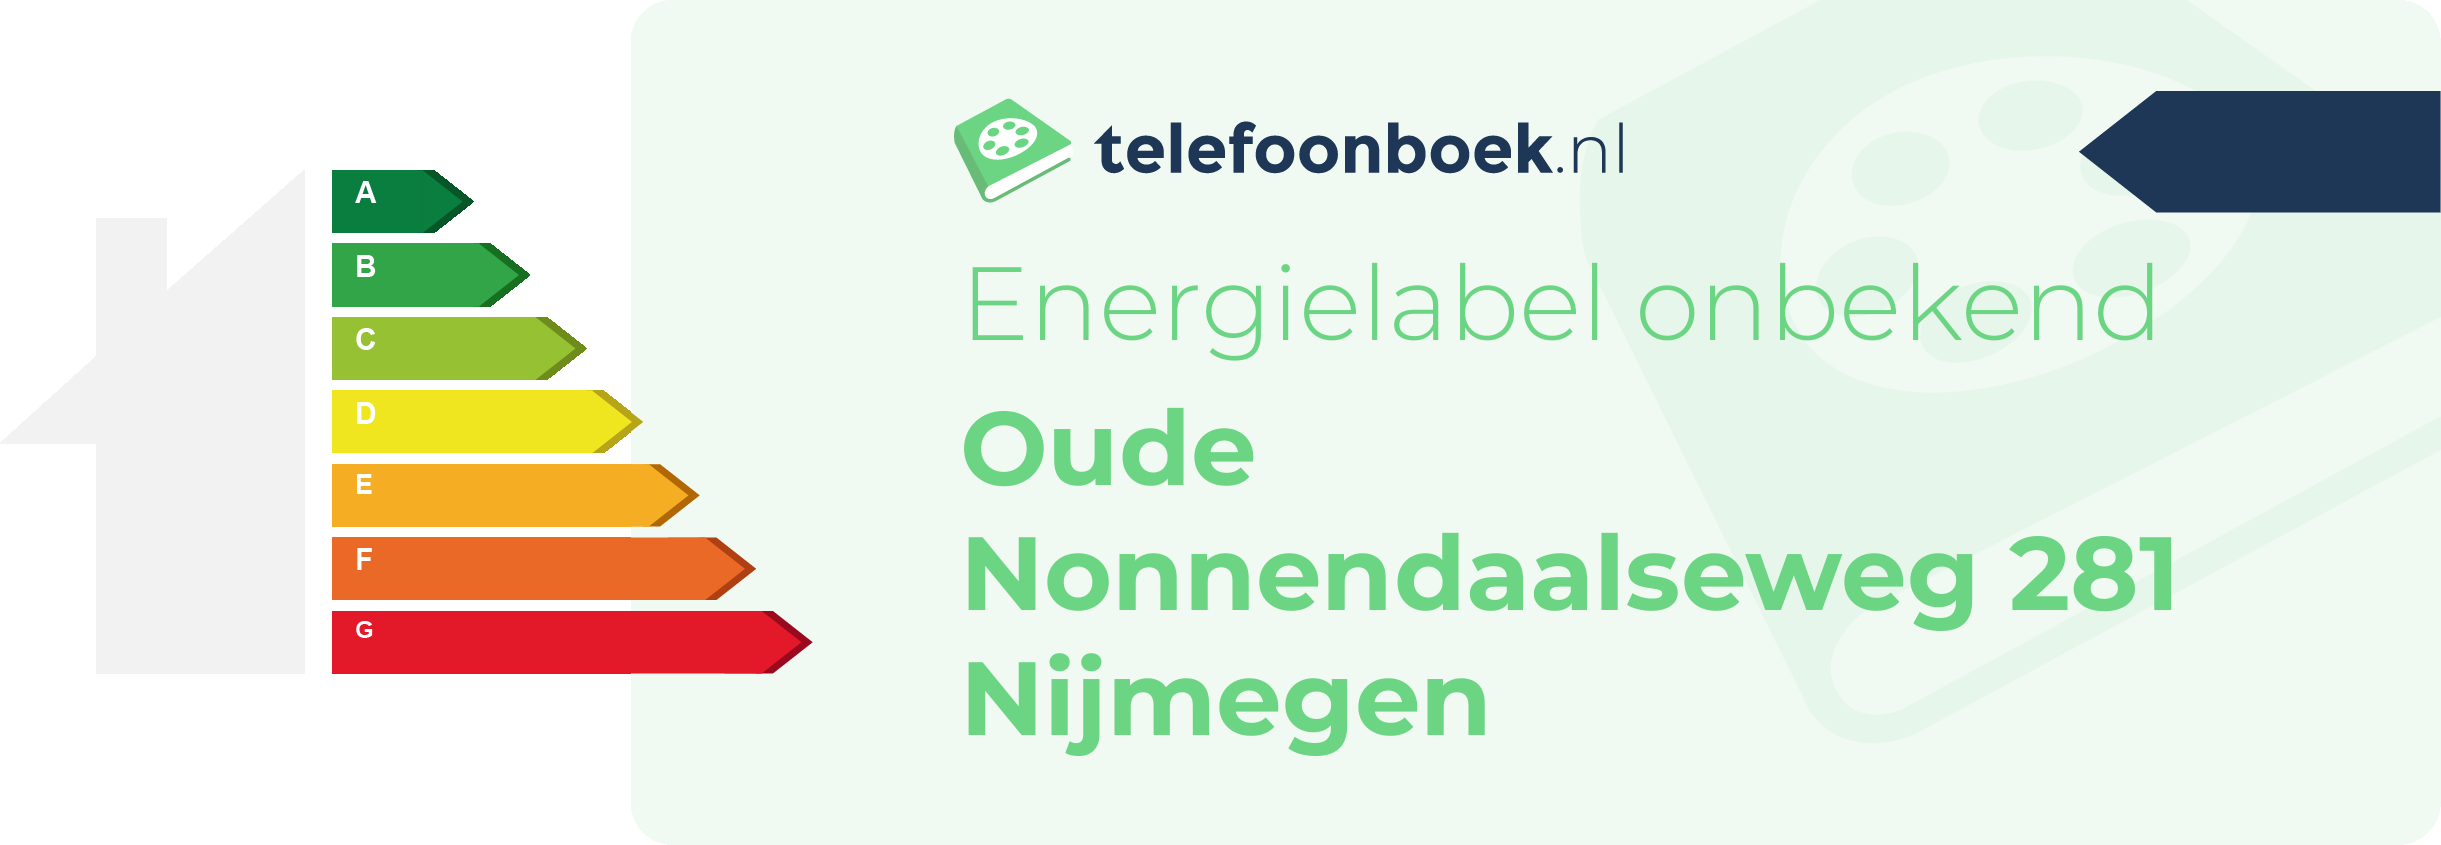 Energielabel Oude Nonnendaalseweg 281 Nijmegen